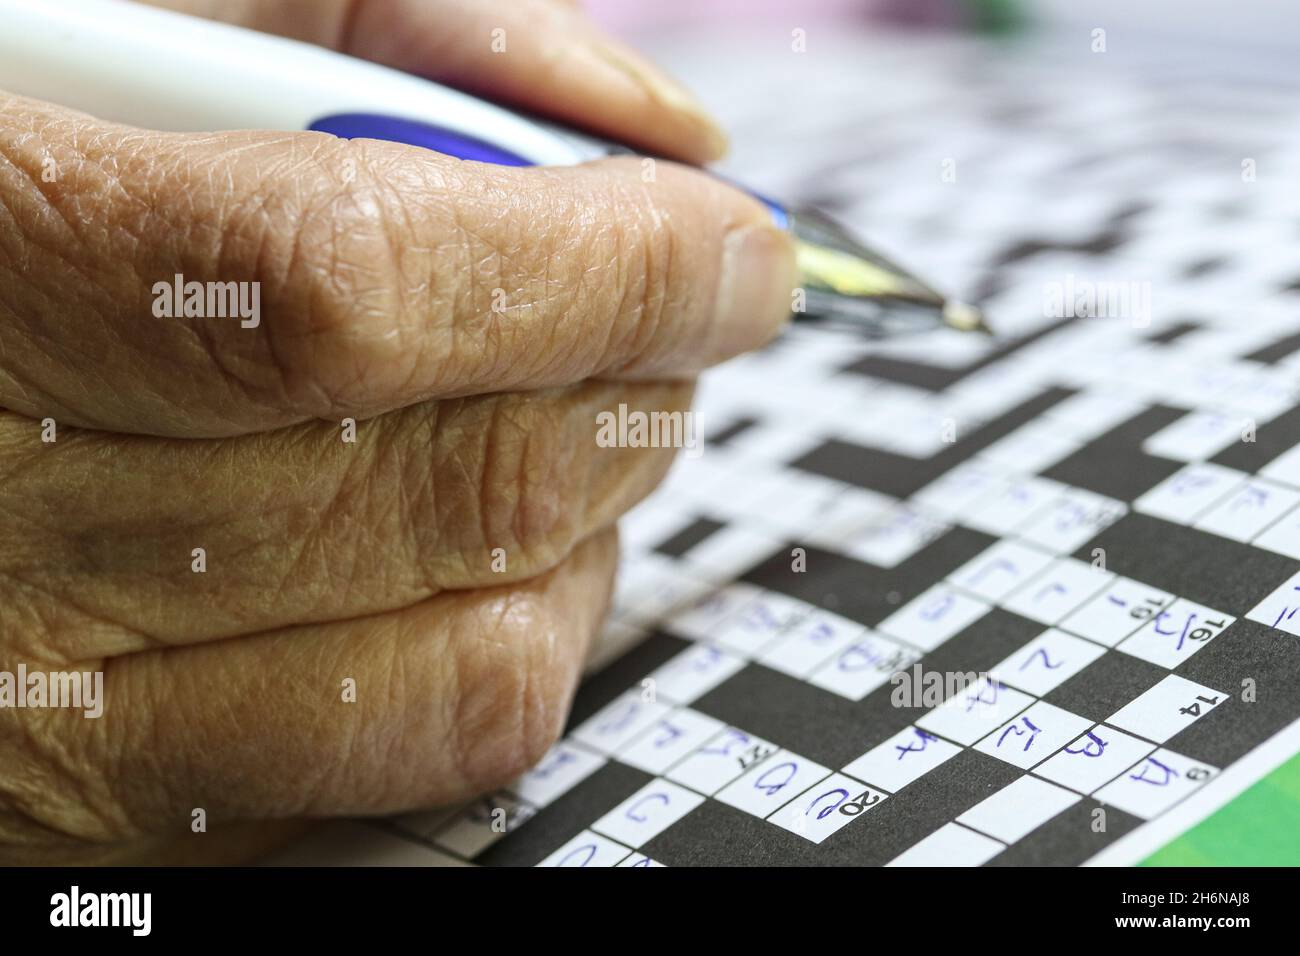 Immagine generica delle mani anziane femminili usando una penna per riempire un puzzle di cruciverba. Foto Stock